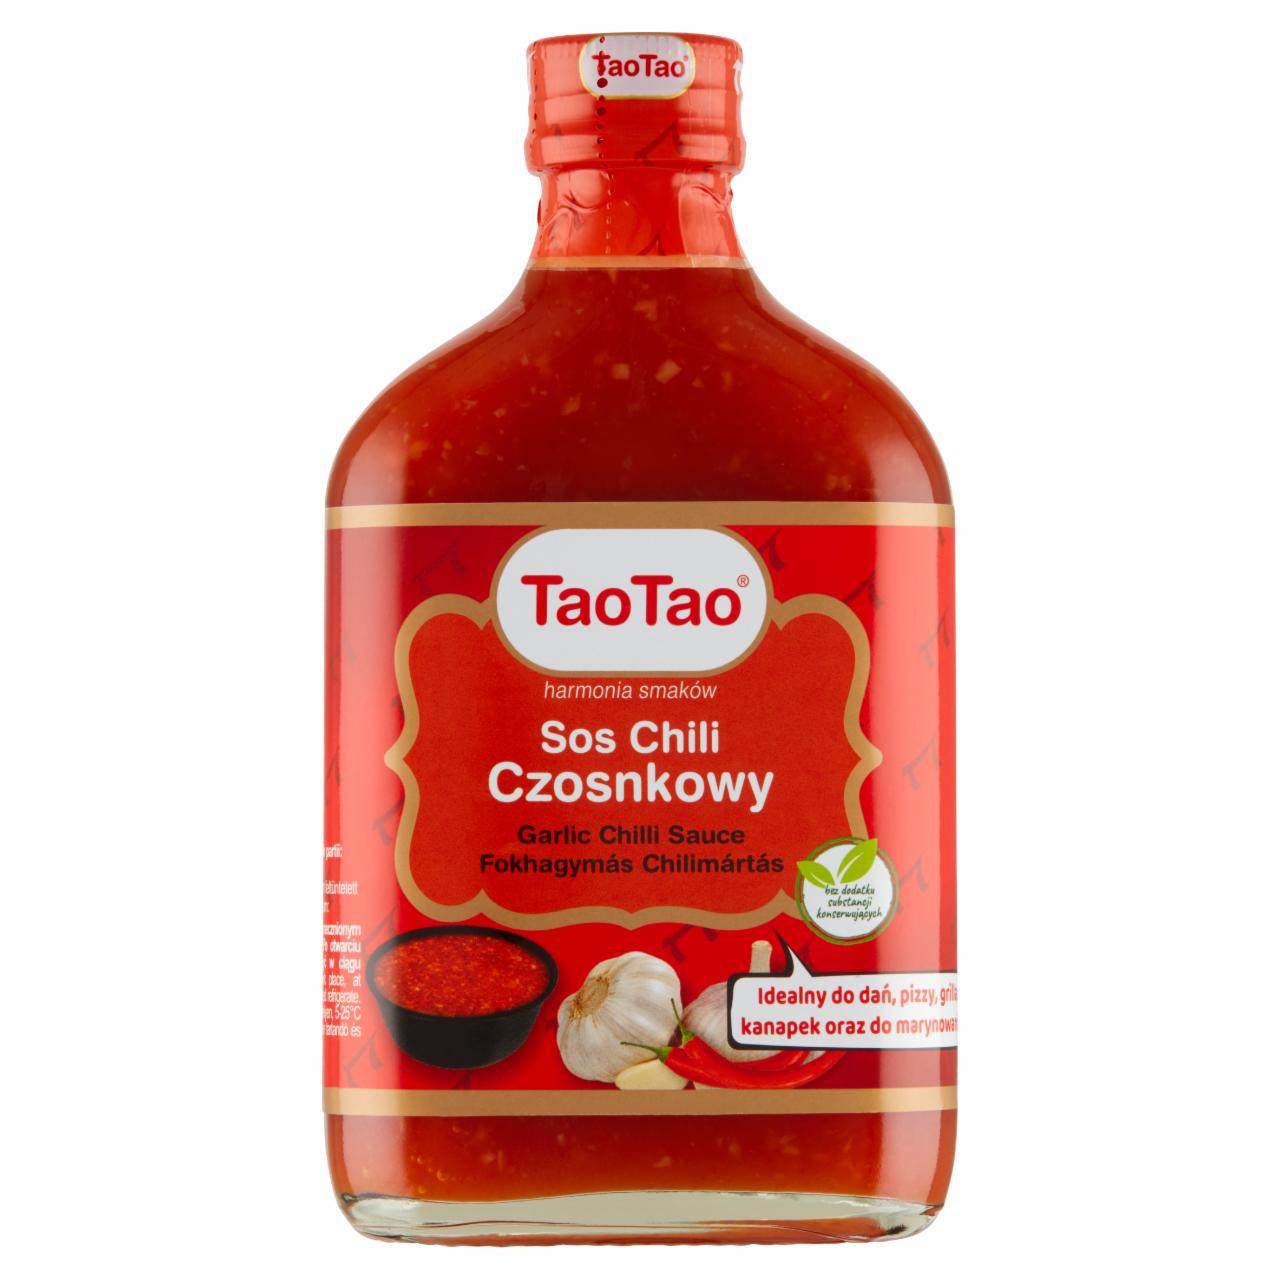 Képek - Fokhagymás chilimártás TaoTao